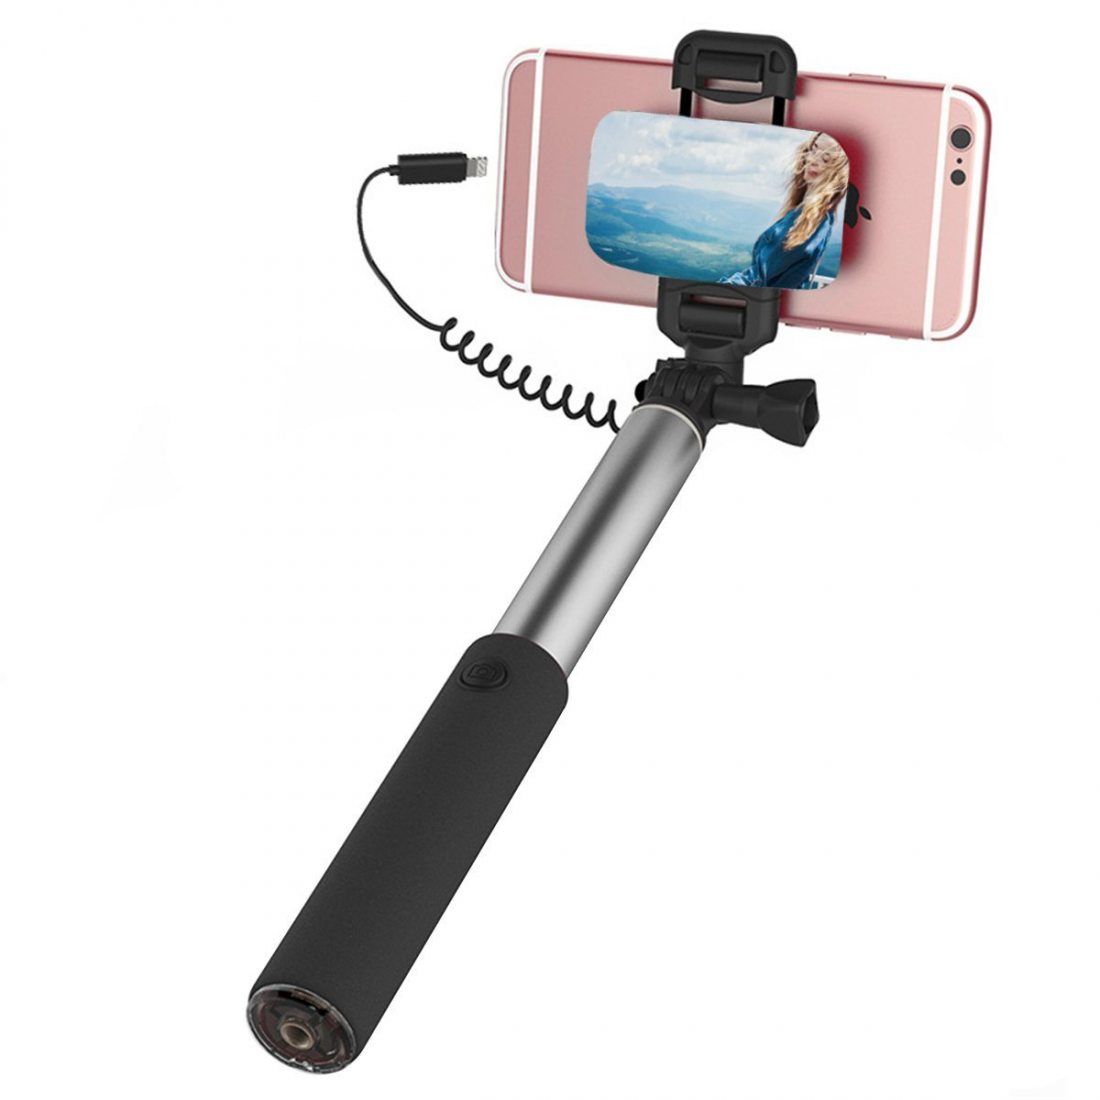 Perche Selfie pour iPhone 7/7 Plus/6/6S/5/5S/SE/5C Aucune Batterie et Connexion Bluetooth Requise Aeeque Selfie Stick Câblé Réglable Télescopique pour Android et IOS Téléphone Portable Violet 